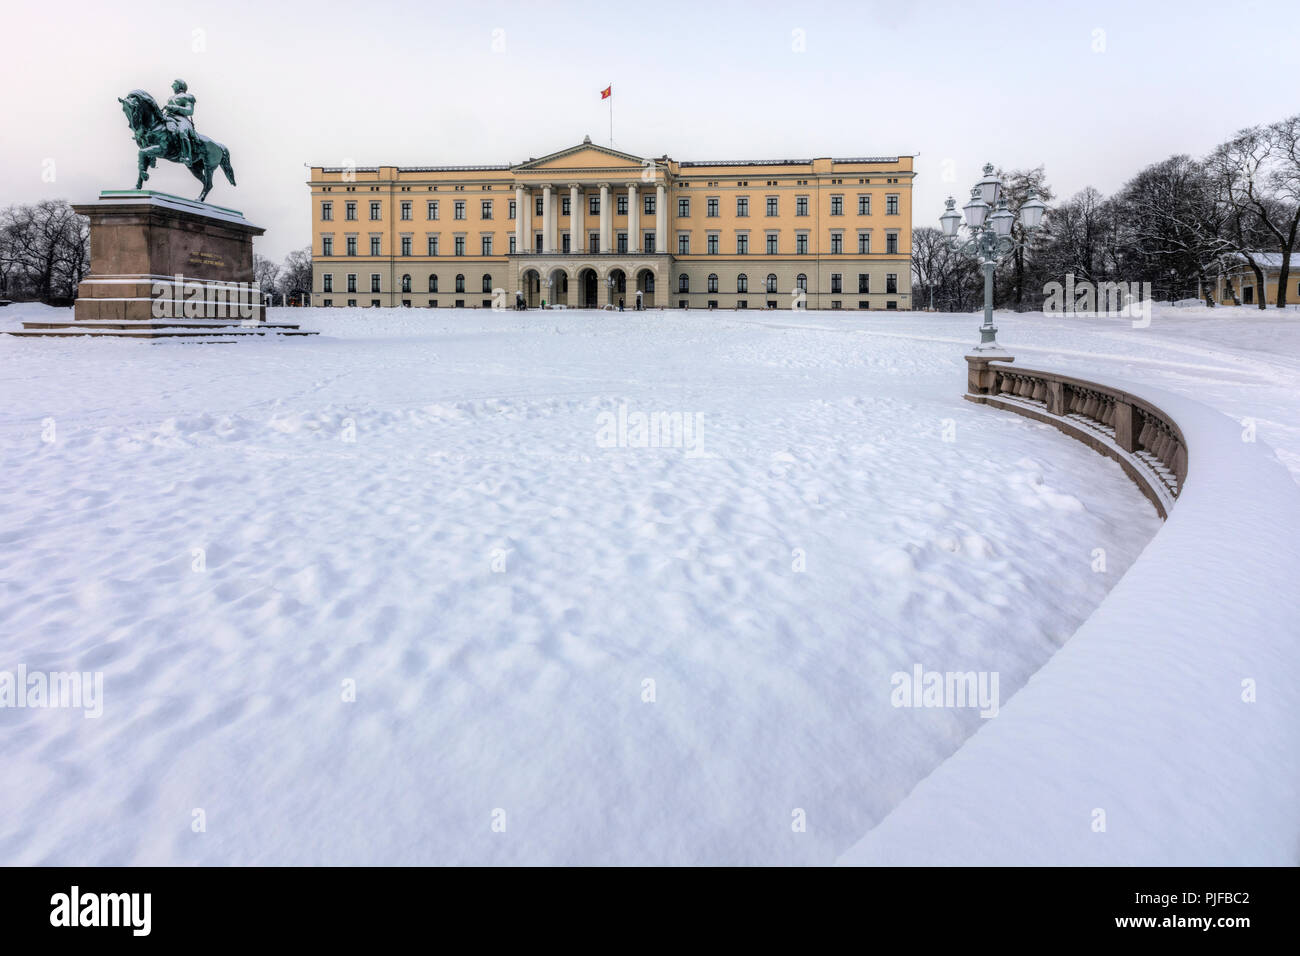 Oslo, Palais Royal, Norvège, Scandinavie, Europe Banque D'Images